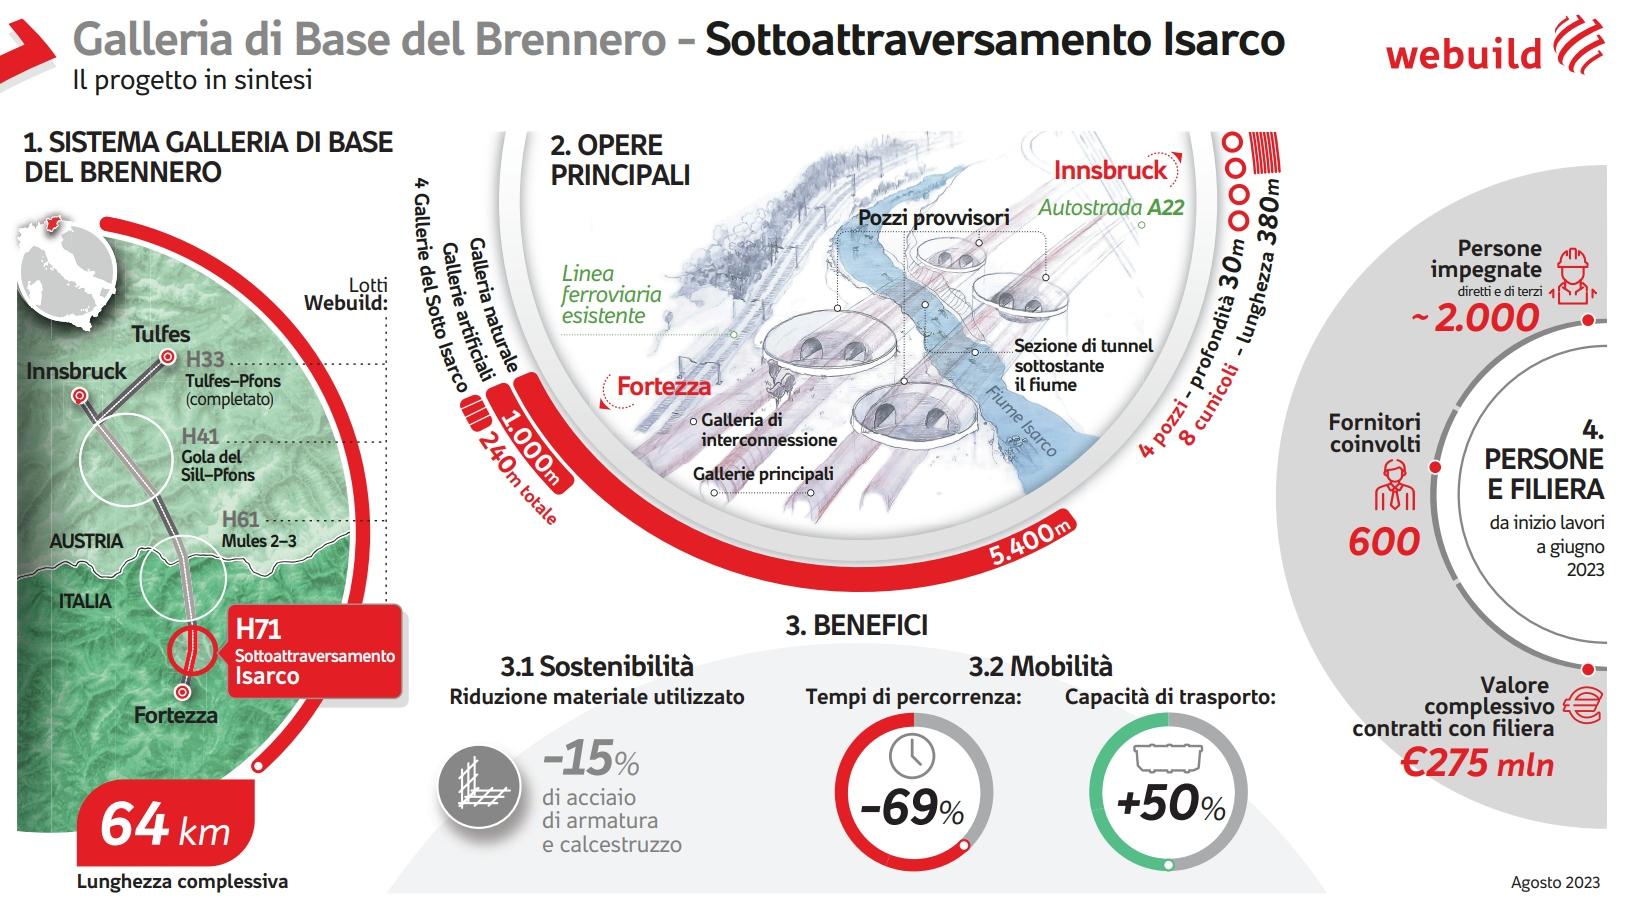 Galleria di Base del Brennero, Sottoattraversamento Isarco, infografica - Webuild